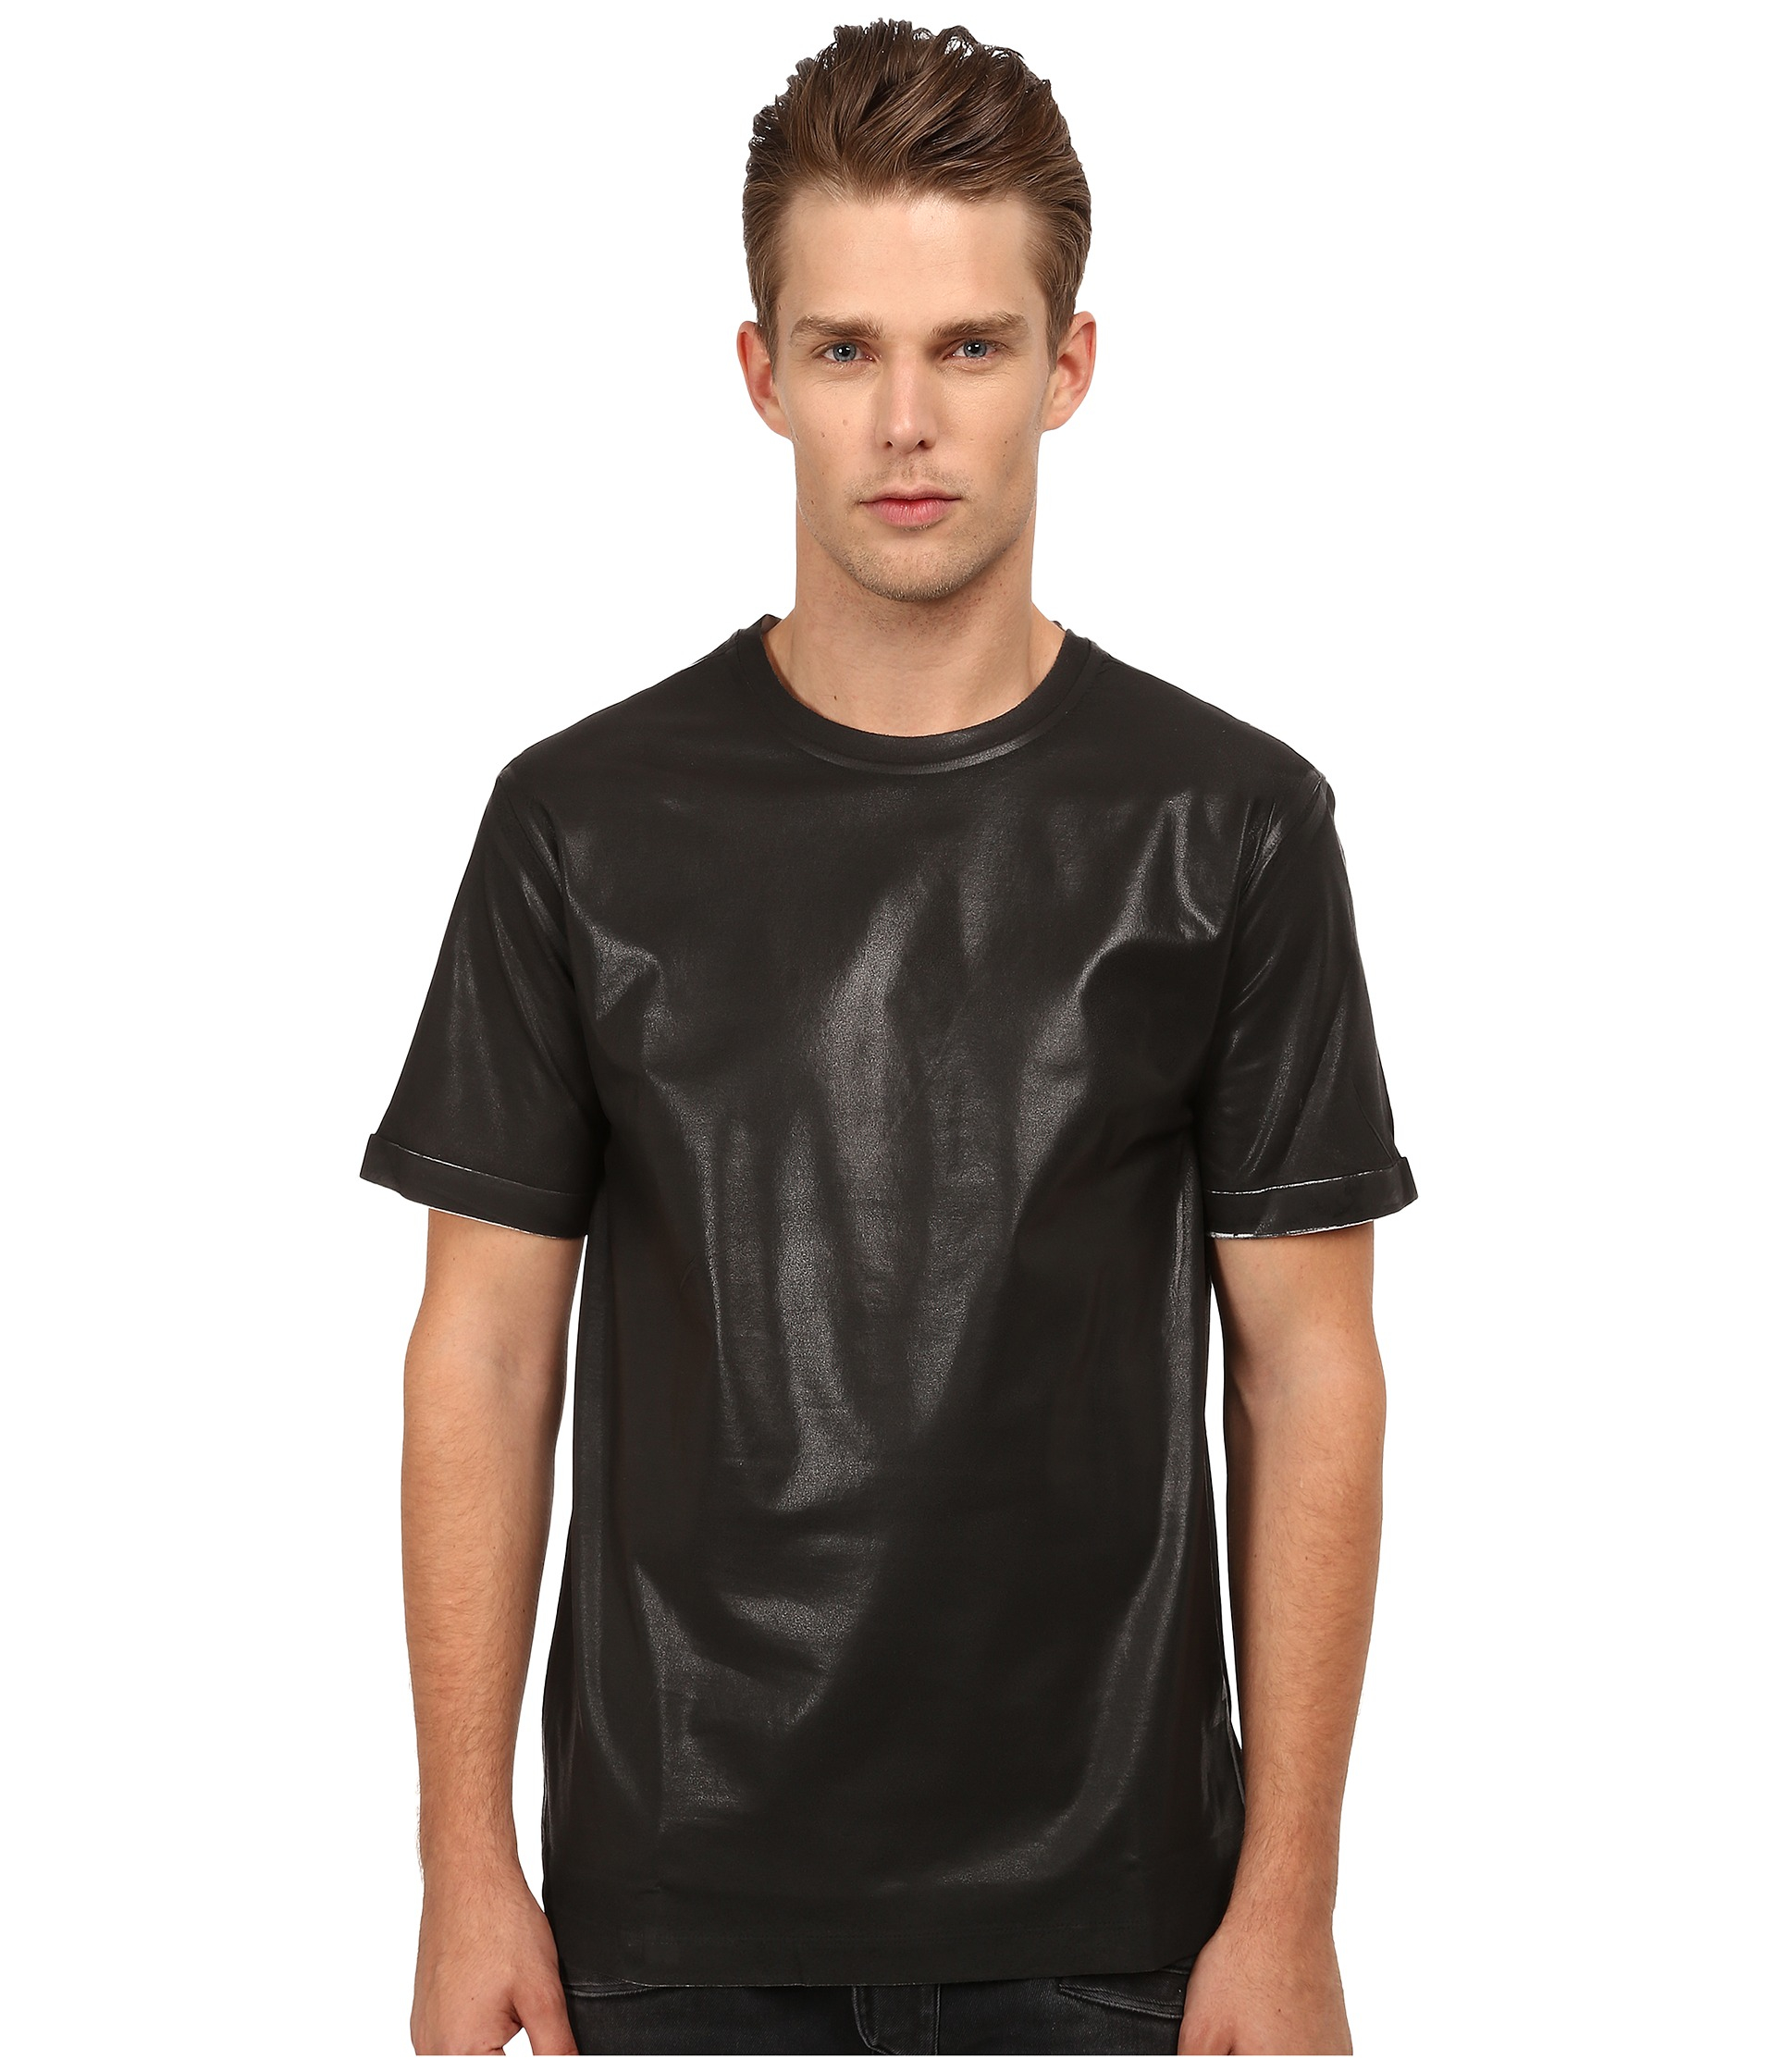 Style T-shirt Black for Men -